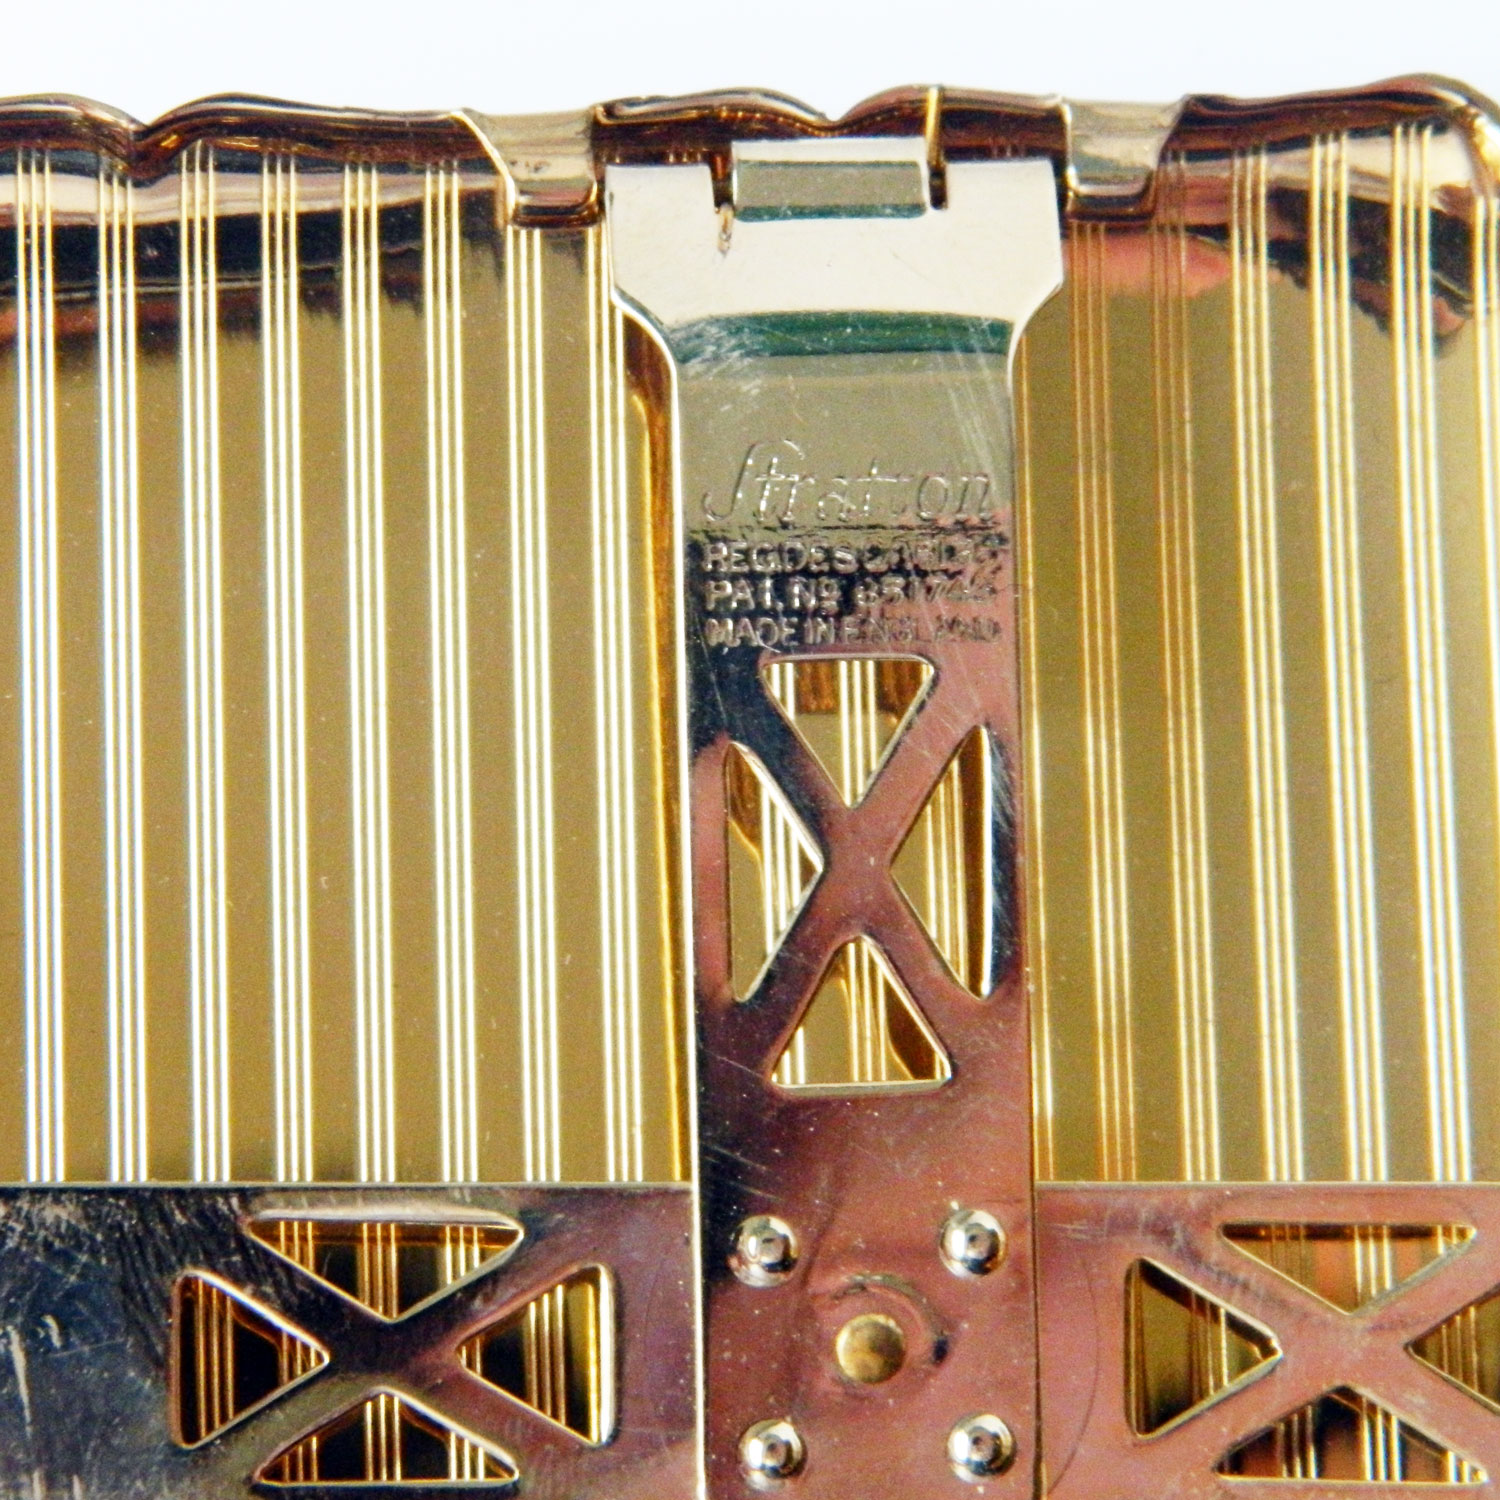 1950's Stratton cigarette case